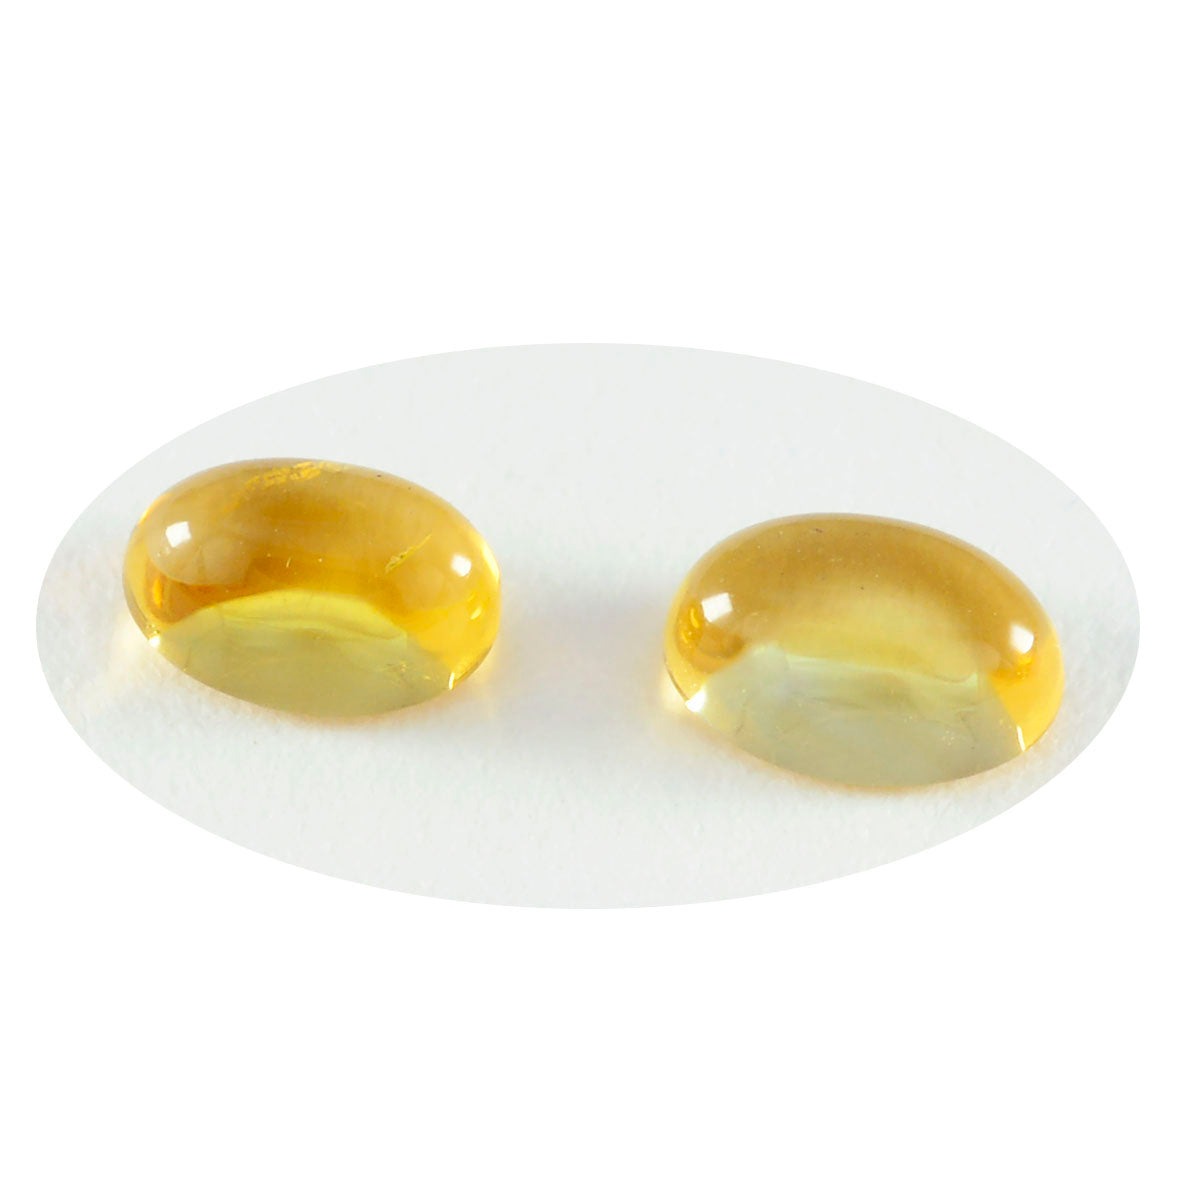 riyogems 1pc cabochon citrine jaune 9x11 mm forme ovale excellente qualité pierre précieuse